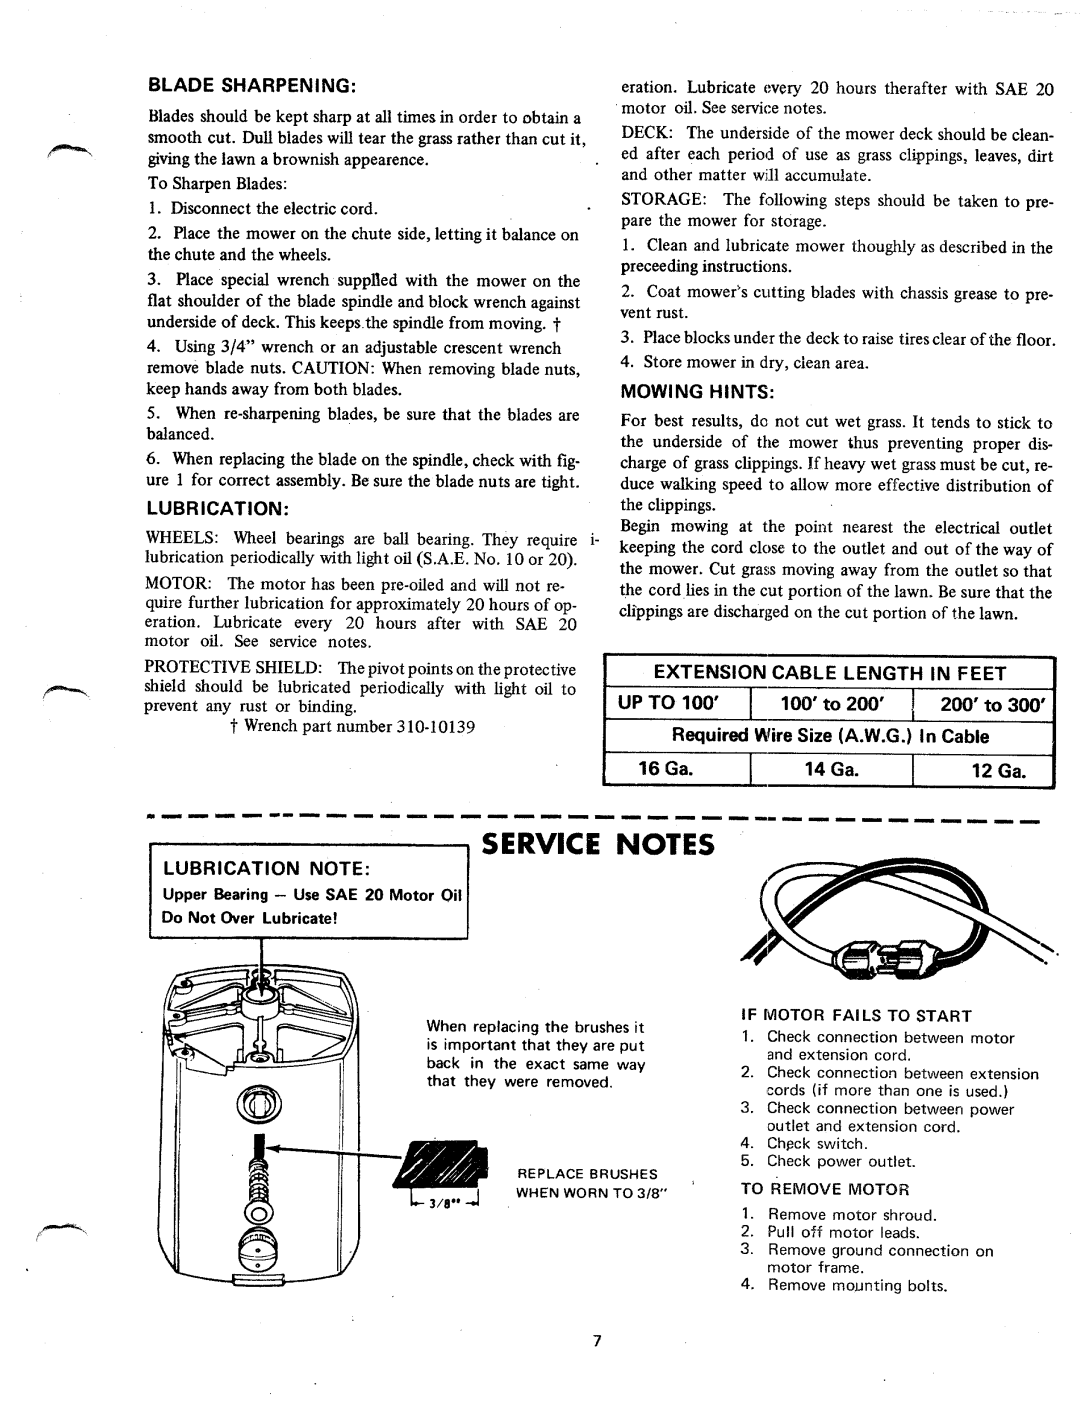 MTD 182-850 manual 